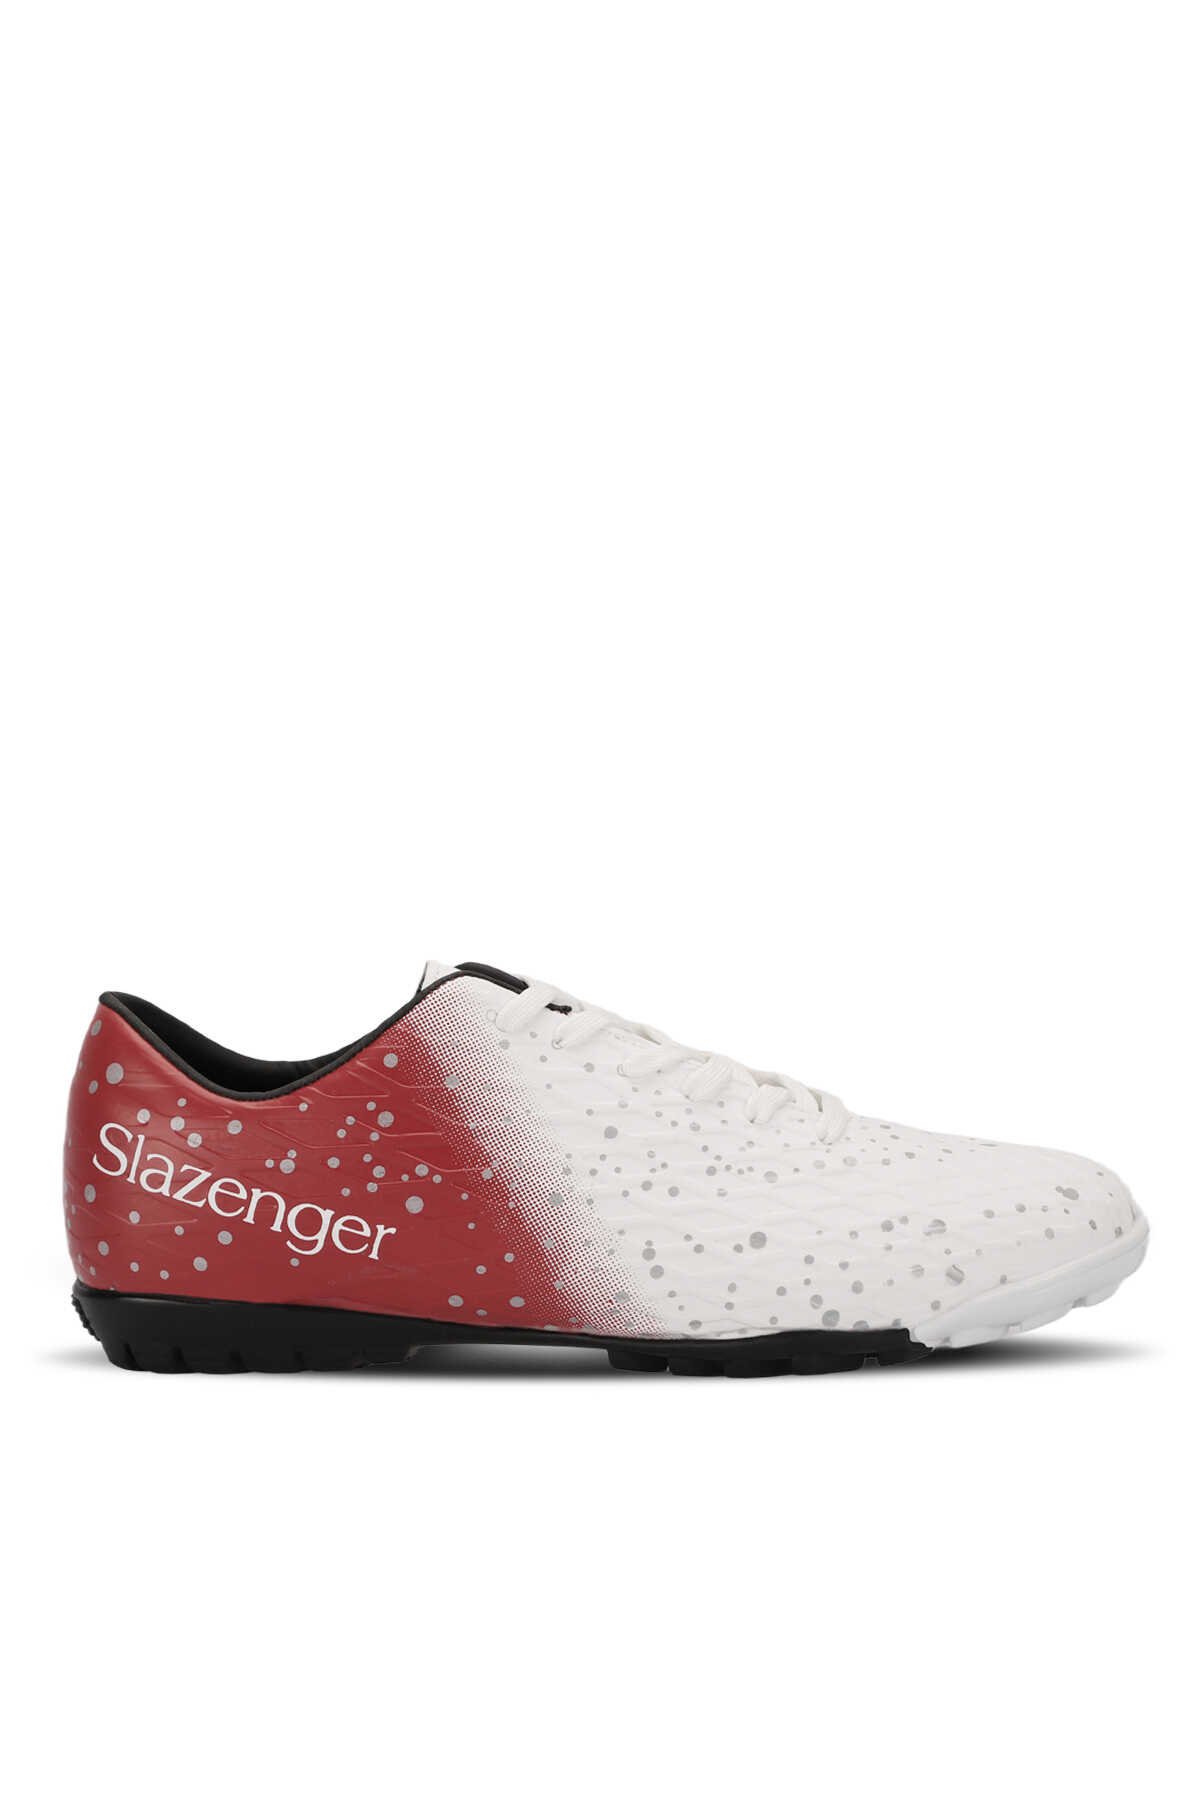 Slazenger - HANIA HS Futbol Erkek Halı Saha Ayakkabı Beyaz / Kırmızı